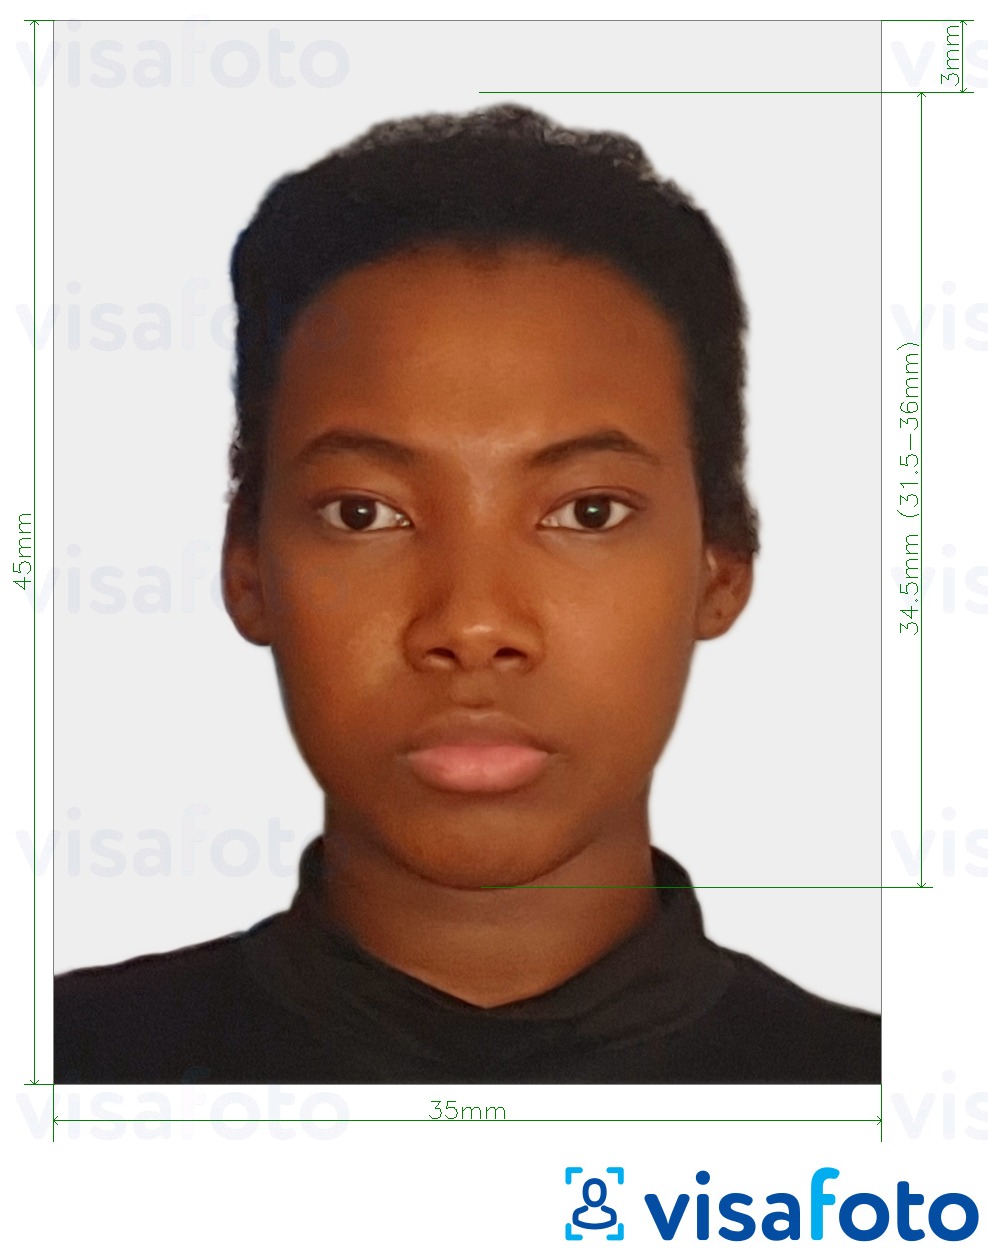 Příklad fotografie Togo vízum 4,5x3,5 cm (45x35mm) s přesnou specifikací velikosti